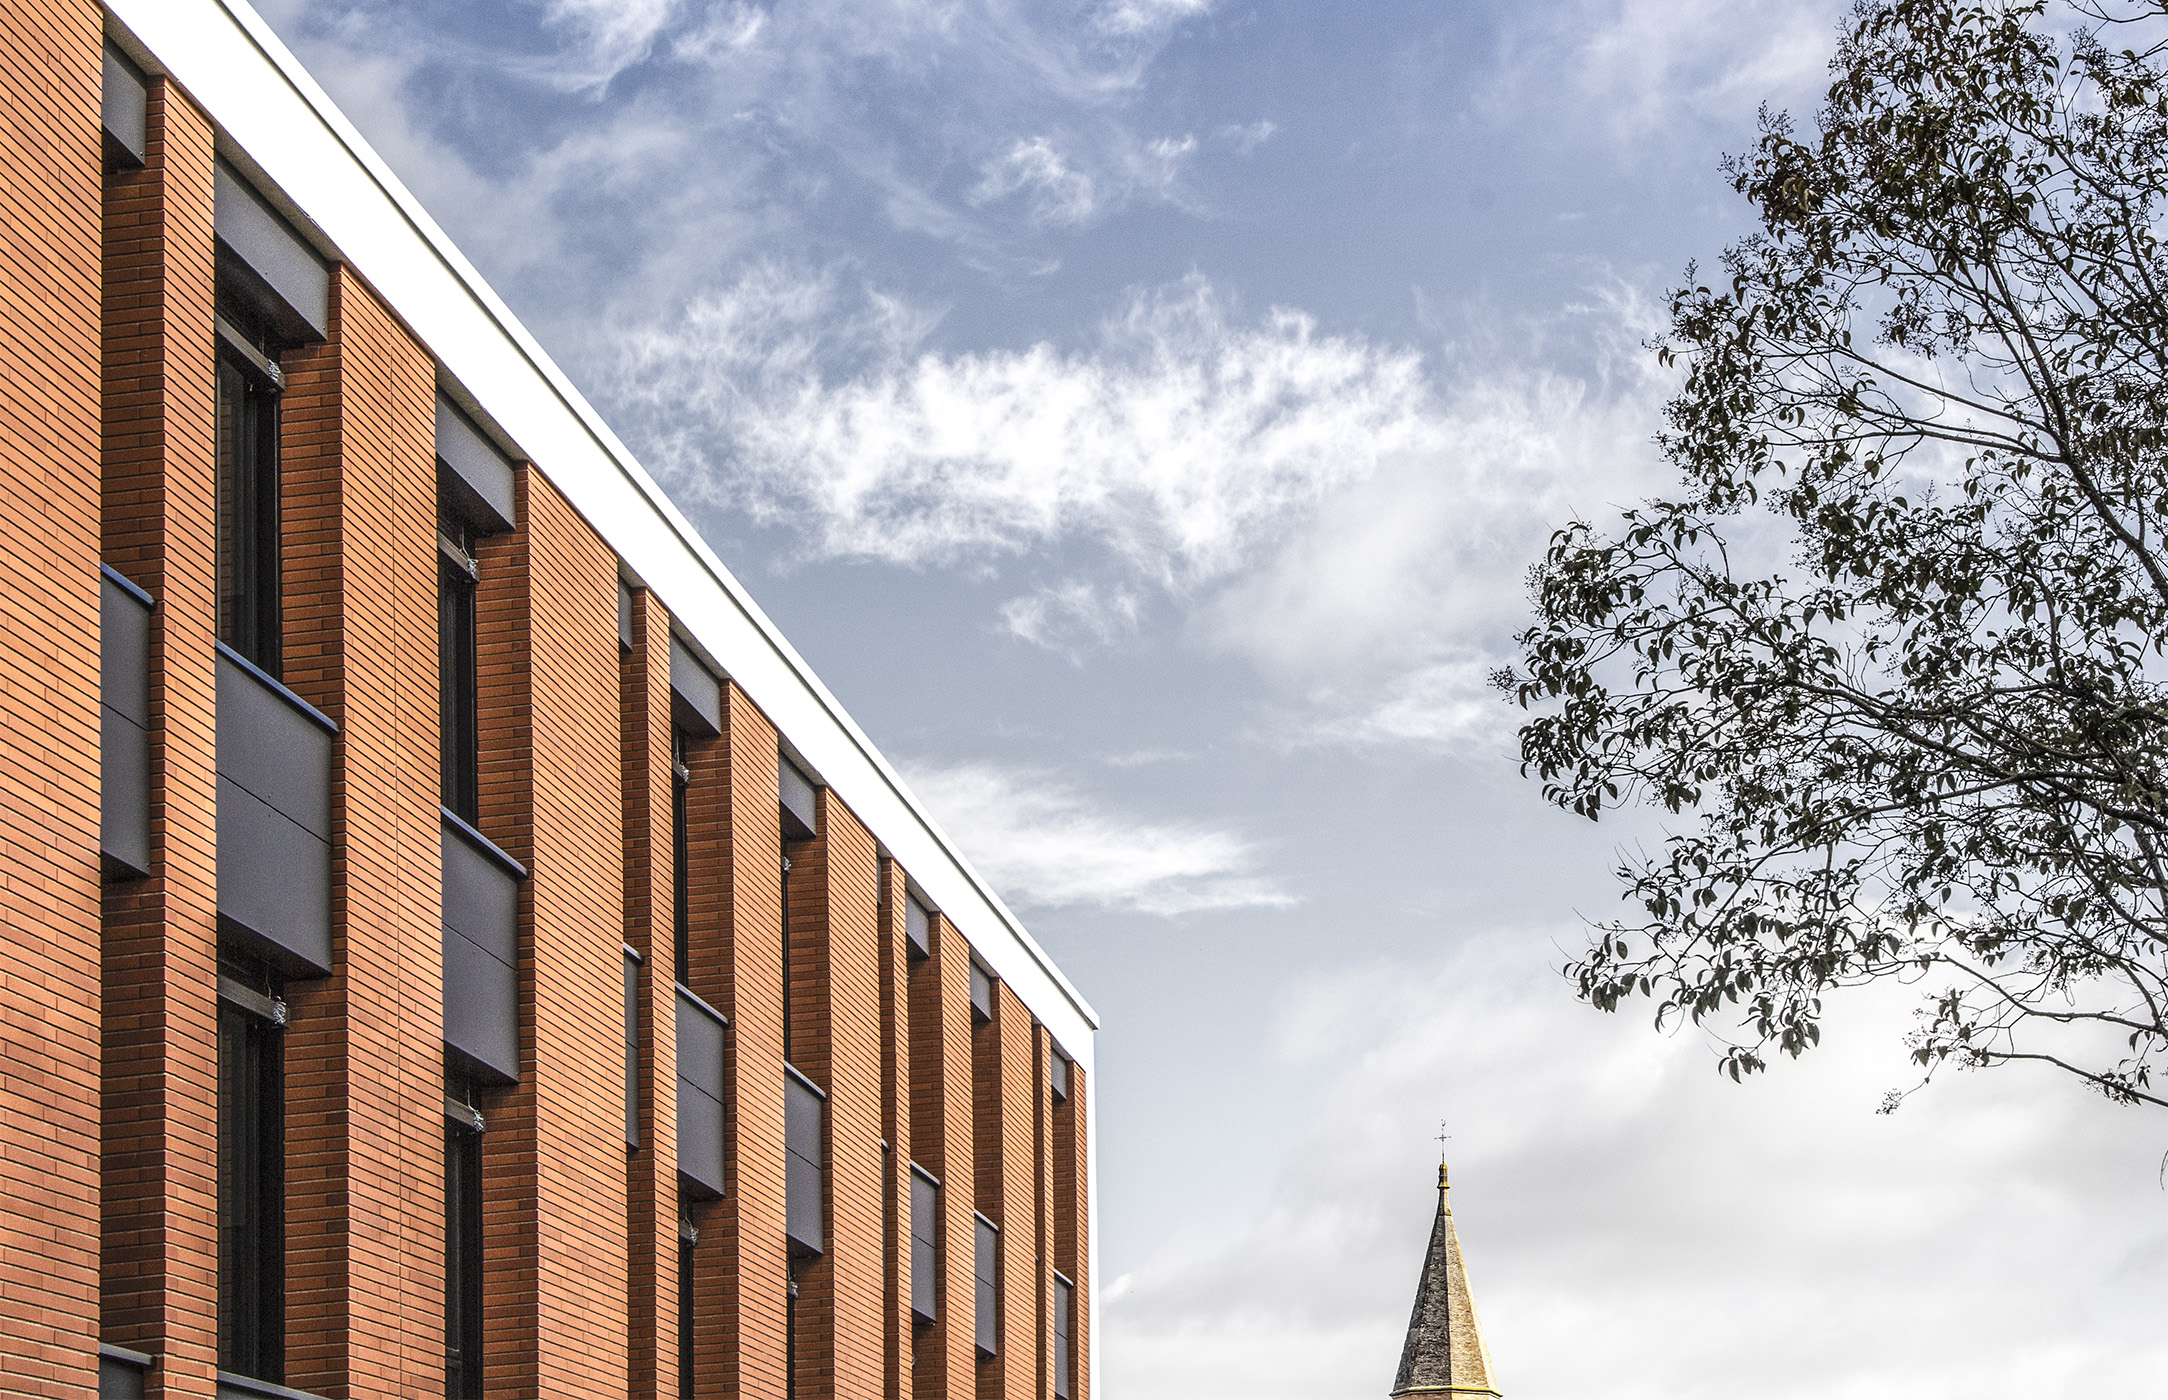 Photographie zoomé de biais de la façade en briquette de l'Hôpital de Gaillac, ciel clair nuageux